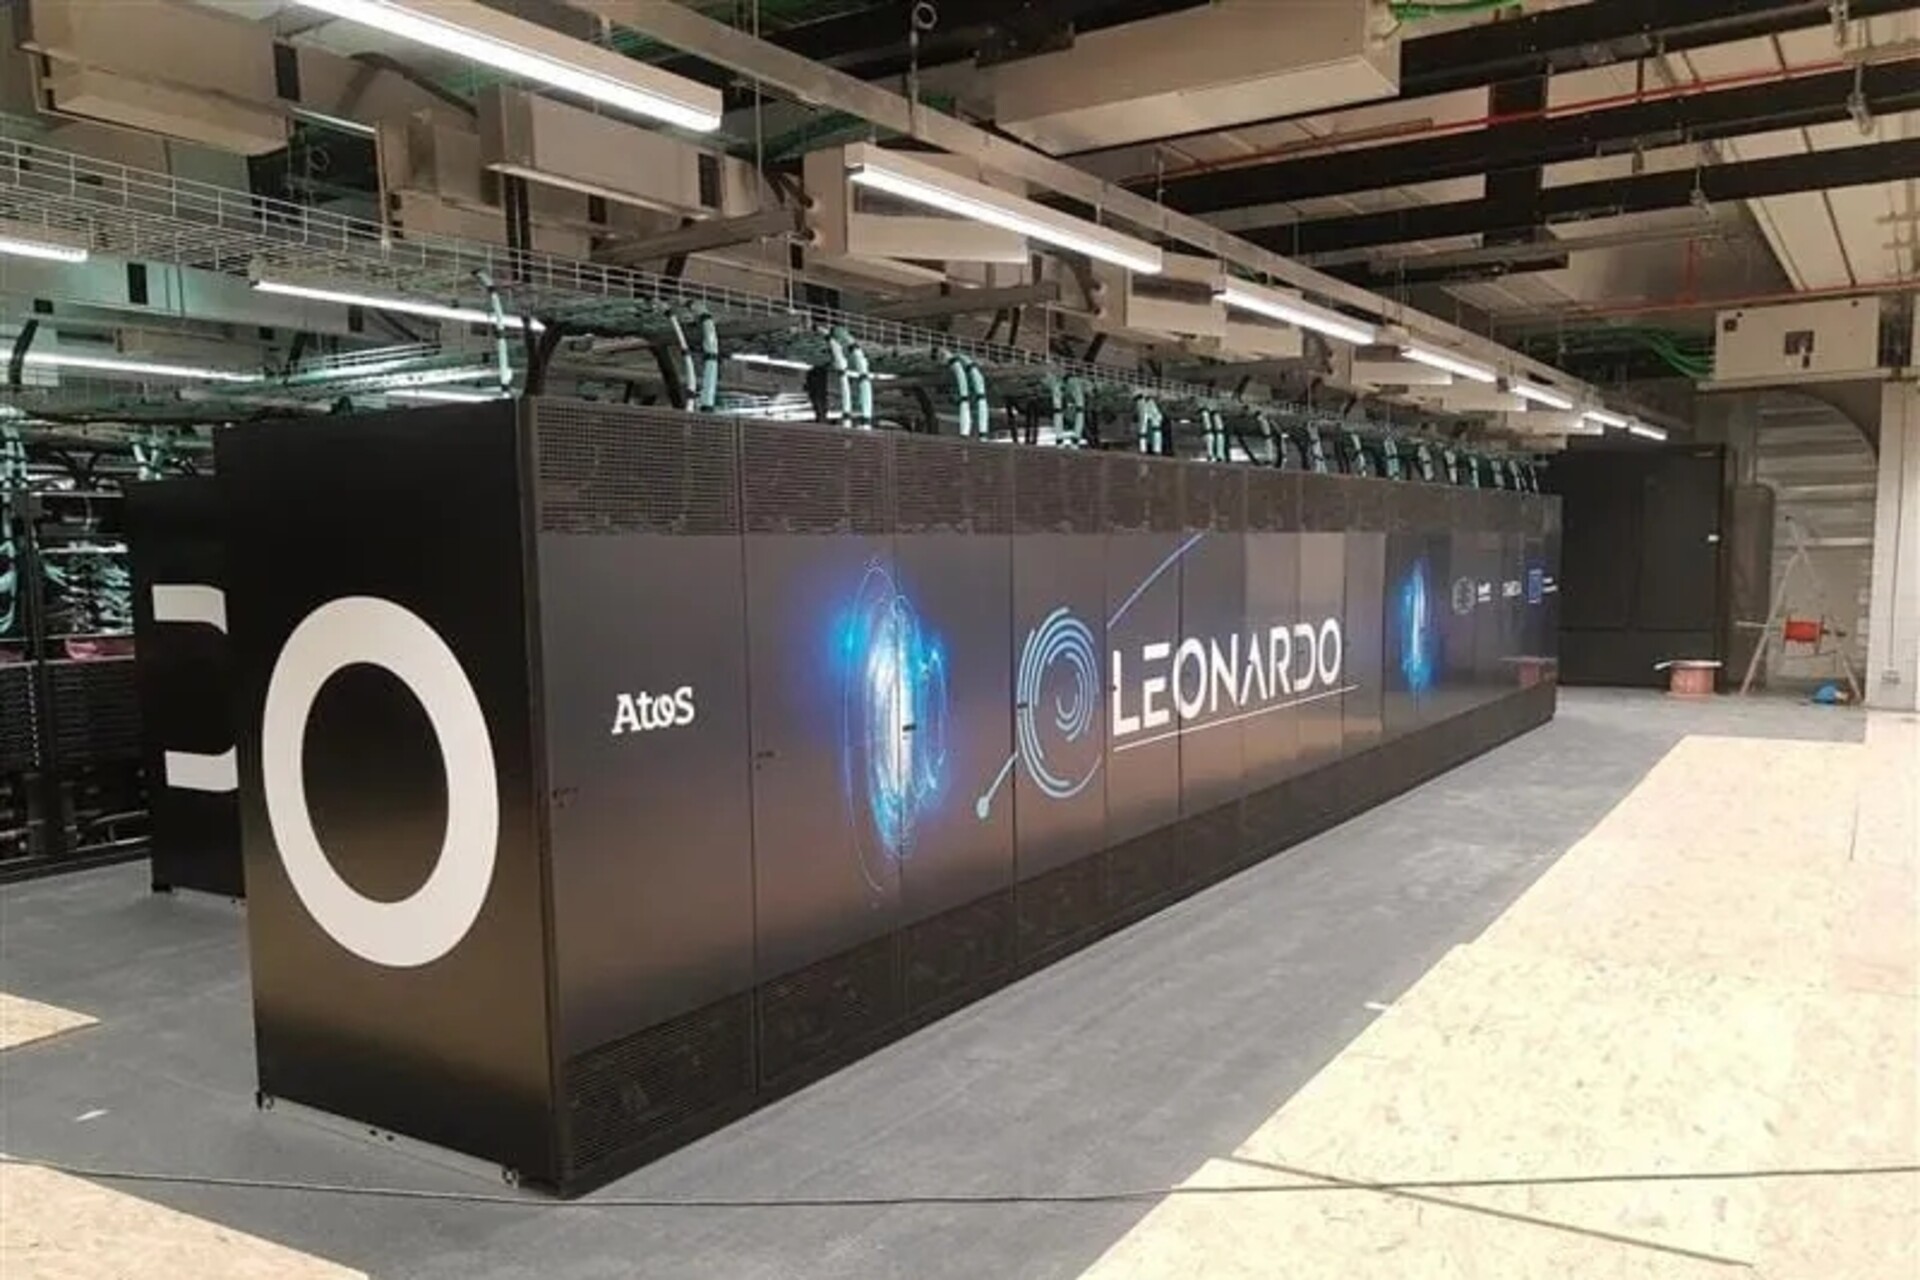 Bologna'daki Büyük Veri Teknopolü'ndeki binasının içindeki Leonardo süper bilgisayarı